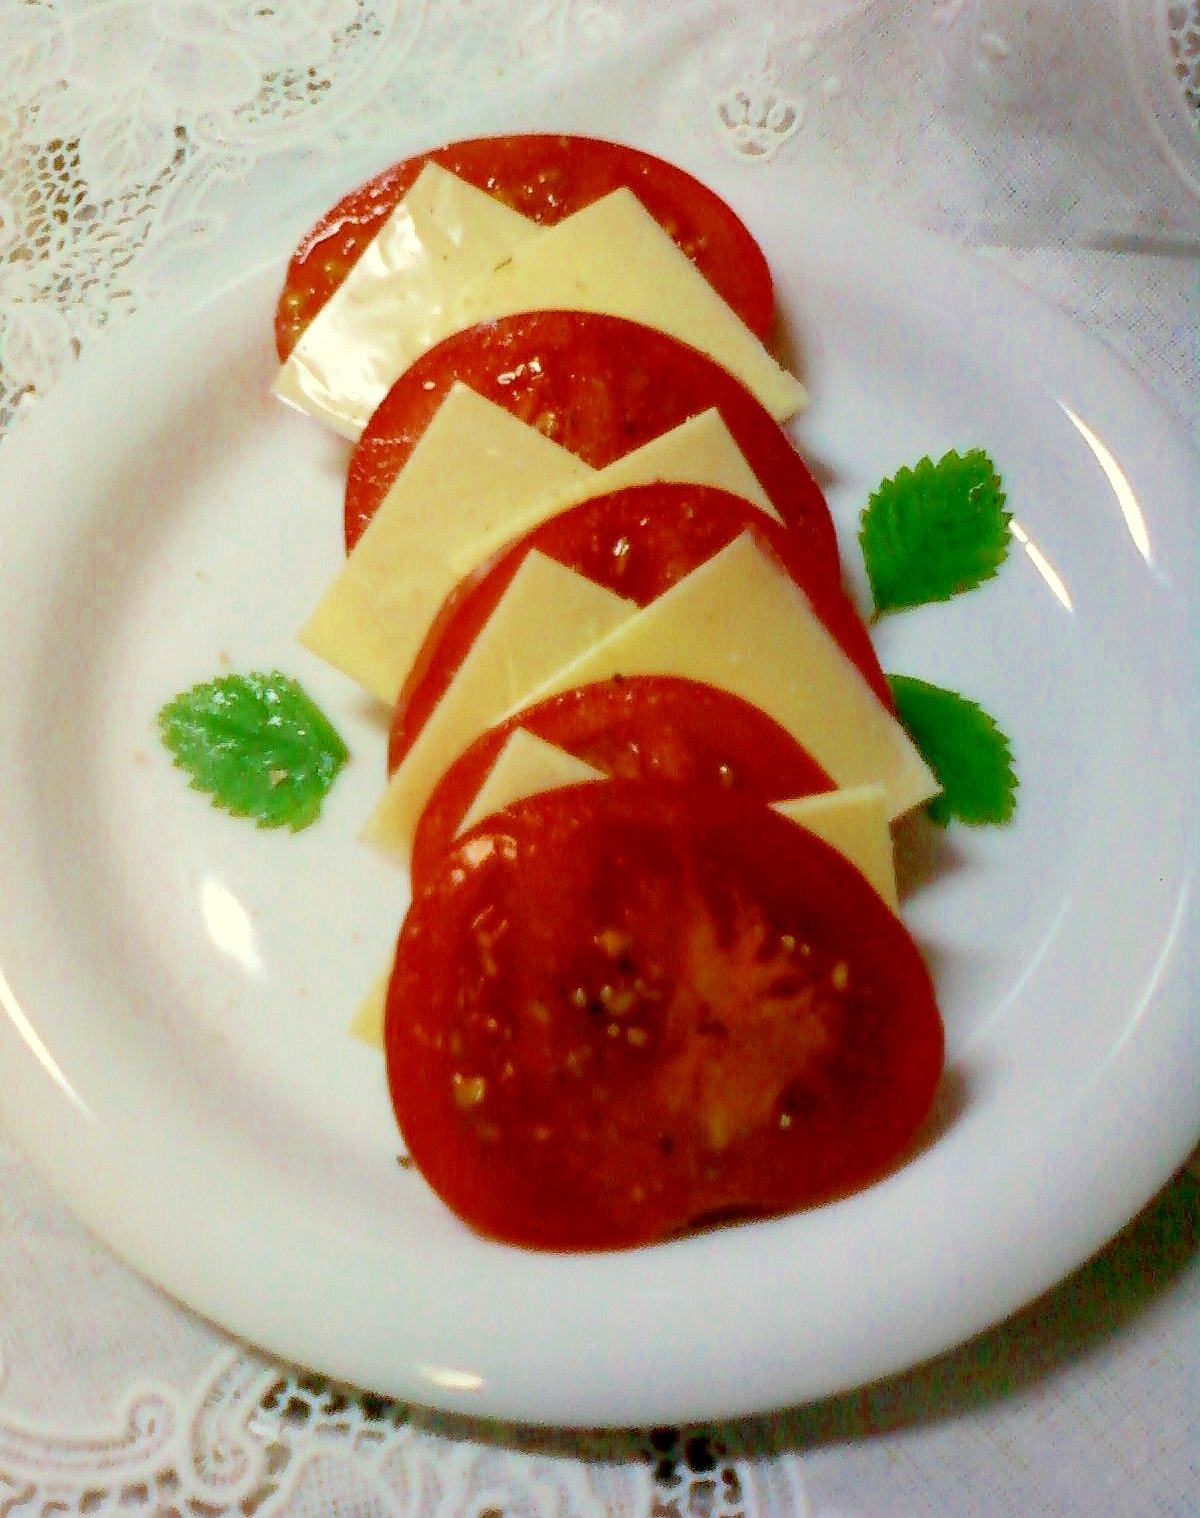 ☆*:・トマトとスライスチーズの盛り合わせ☆*:・